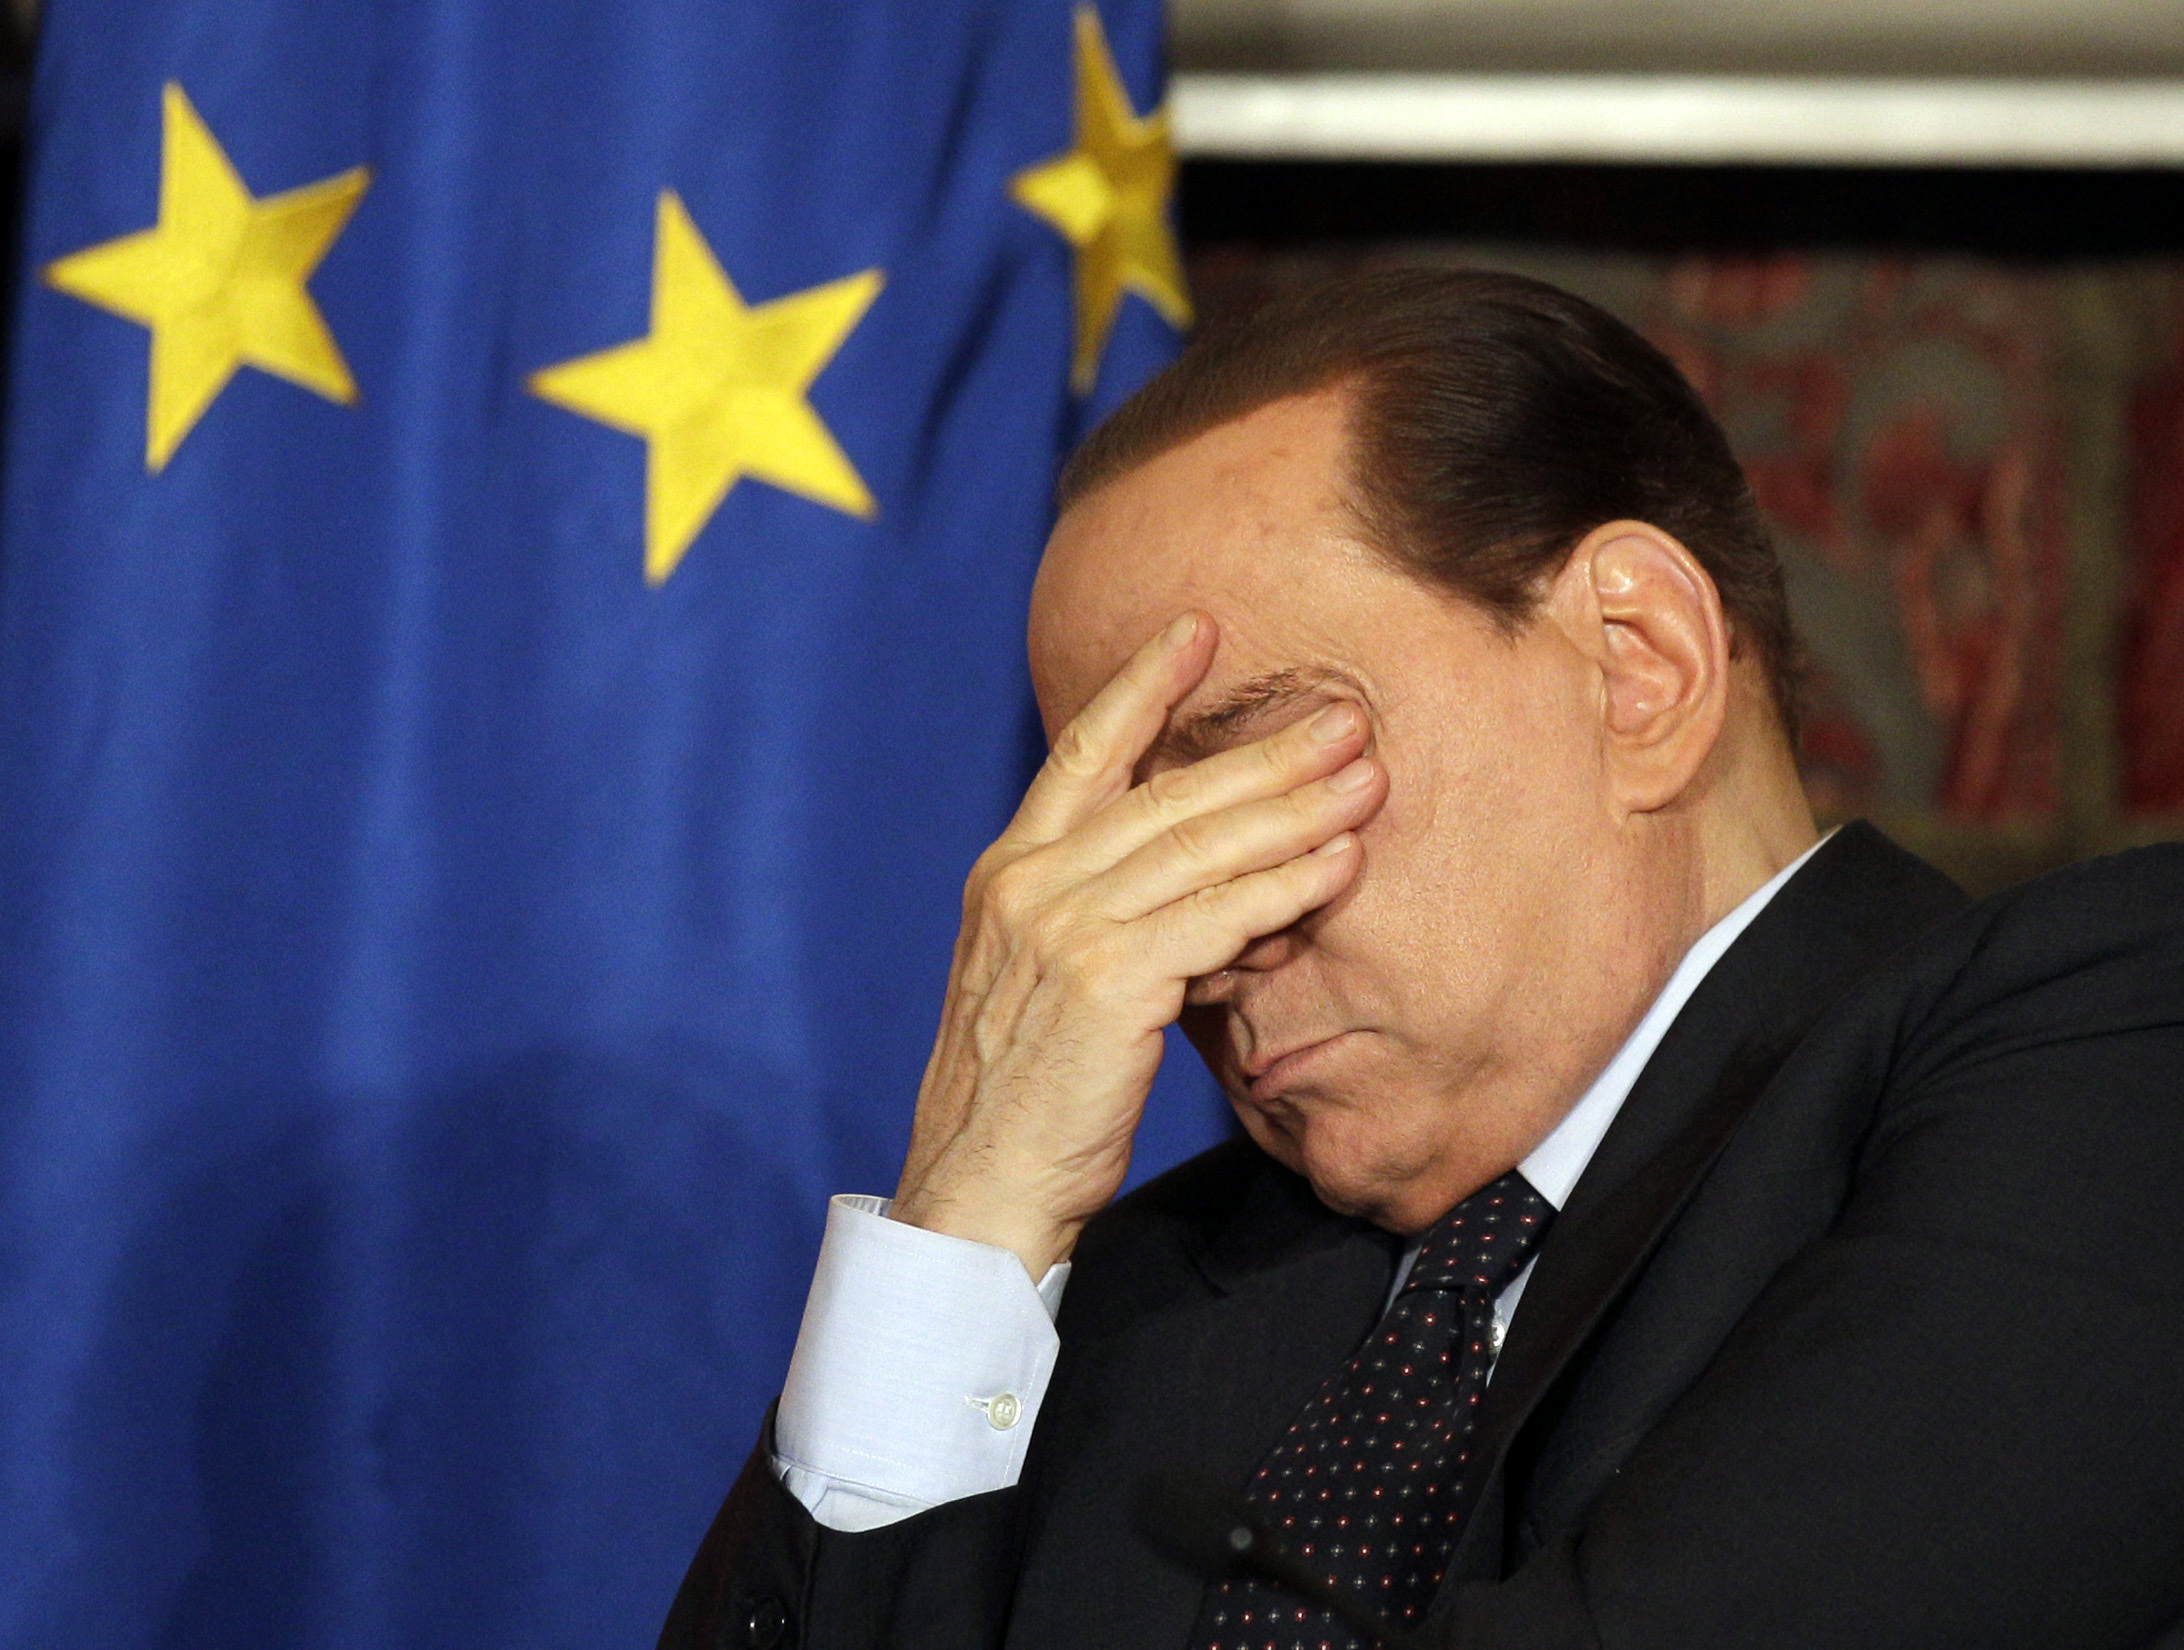 Silvio Berlusconi, Prostitution, strippa, Köp av sexuell tjänst, dans, Italien, Flicka, Burlesk